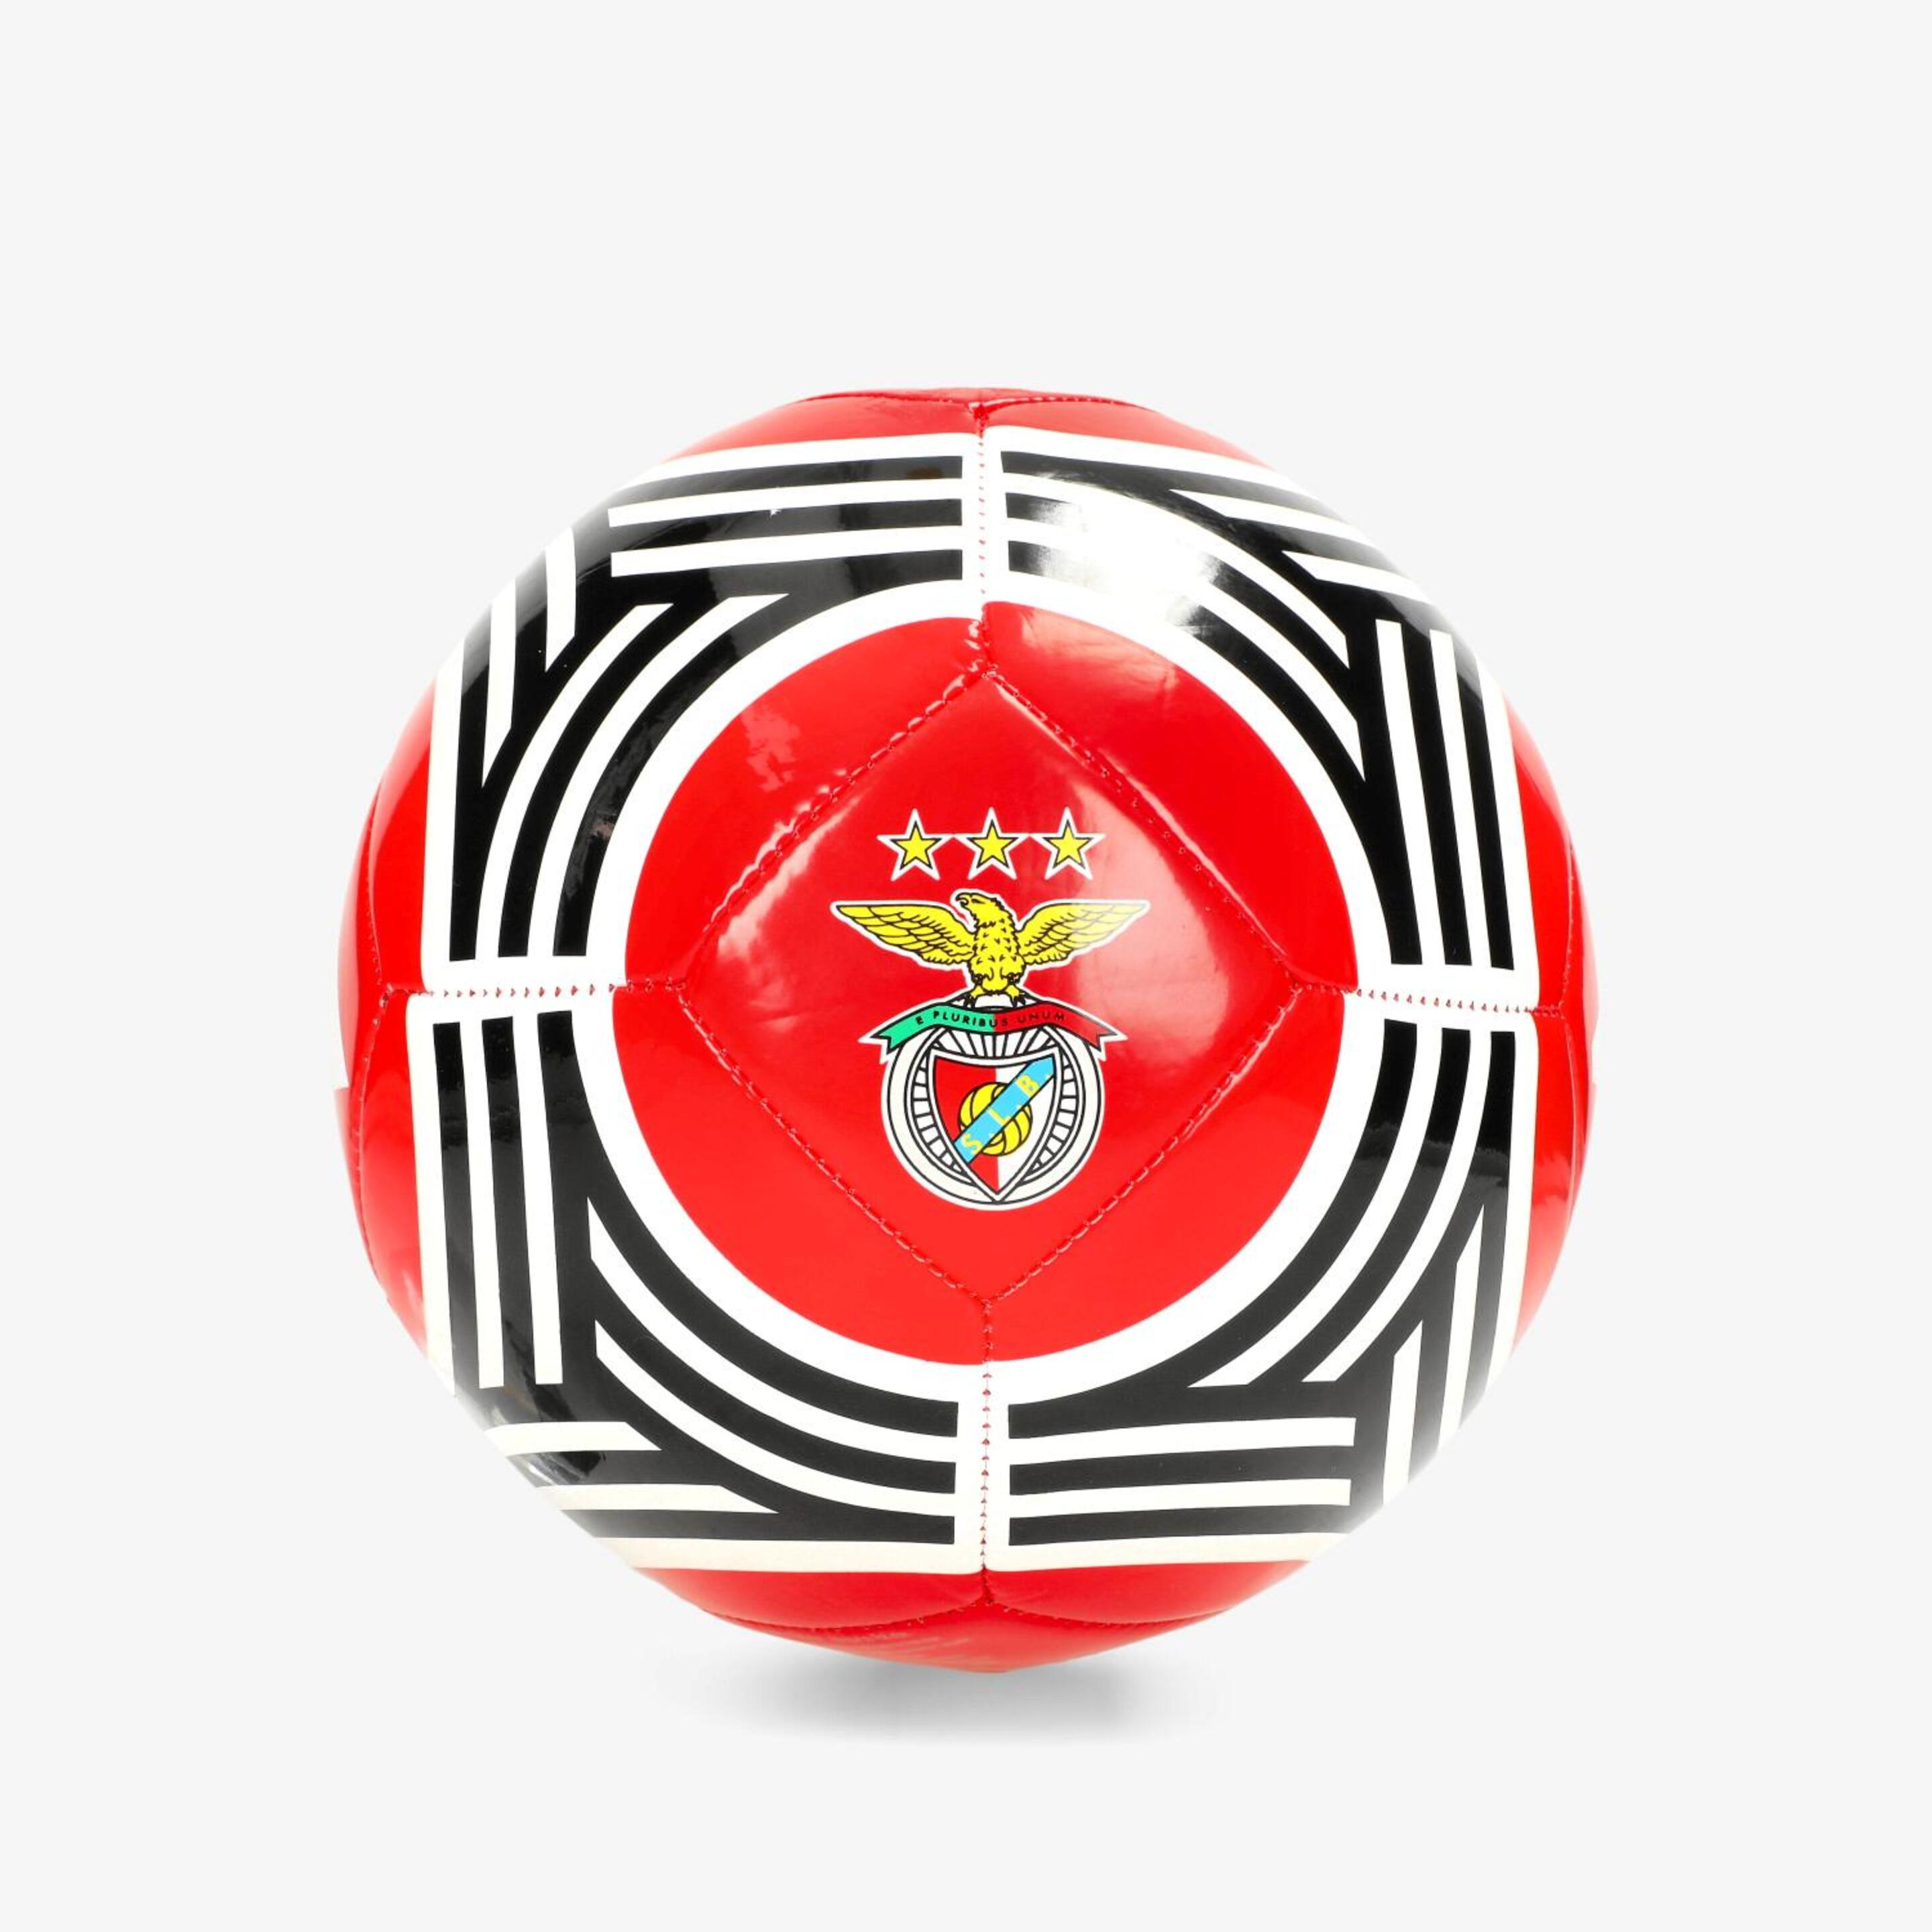 Minibalón Benfica Lisboa 23/24 - Rojo - Fútbol Unisex